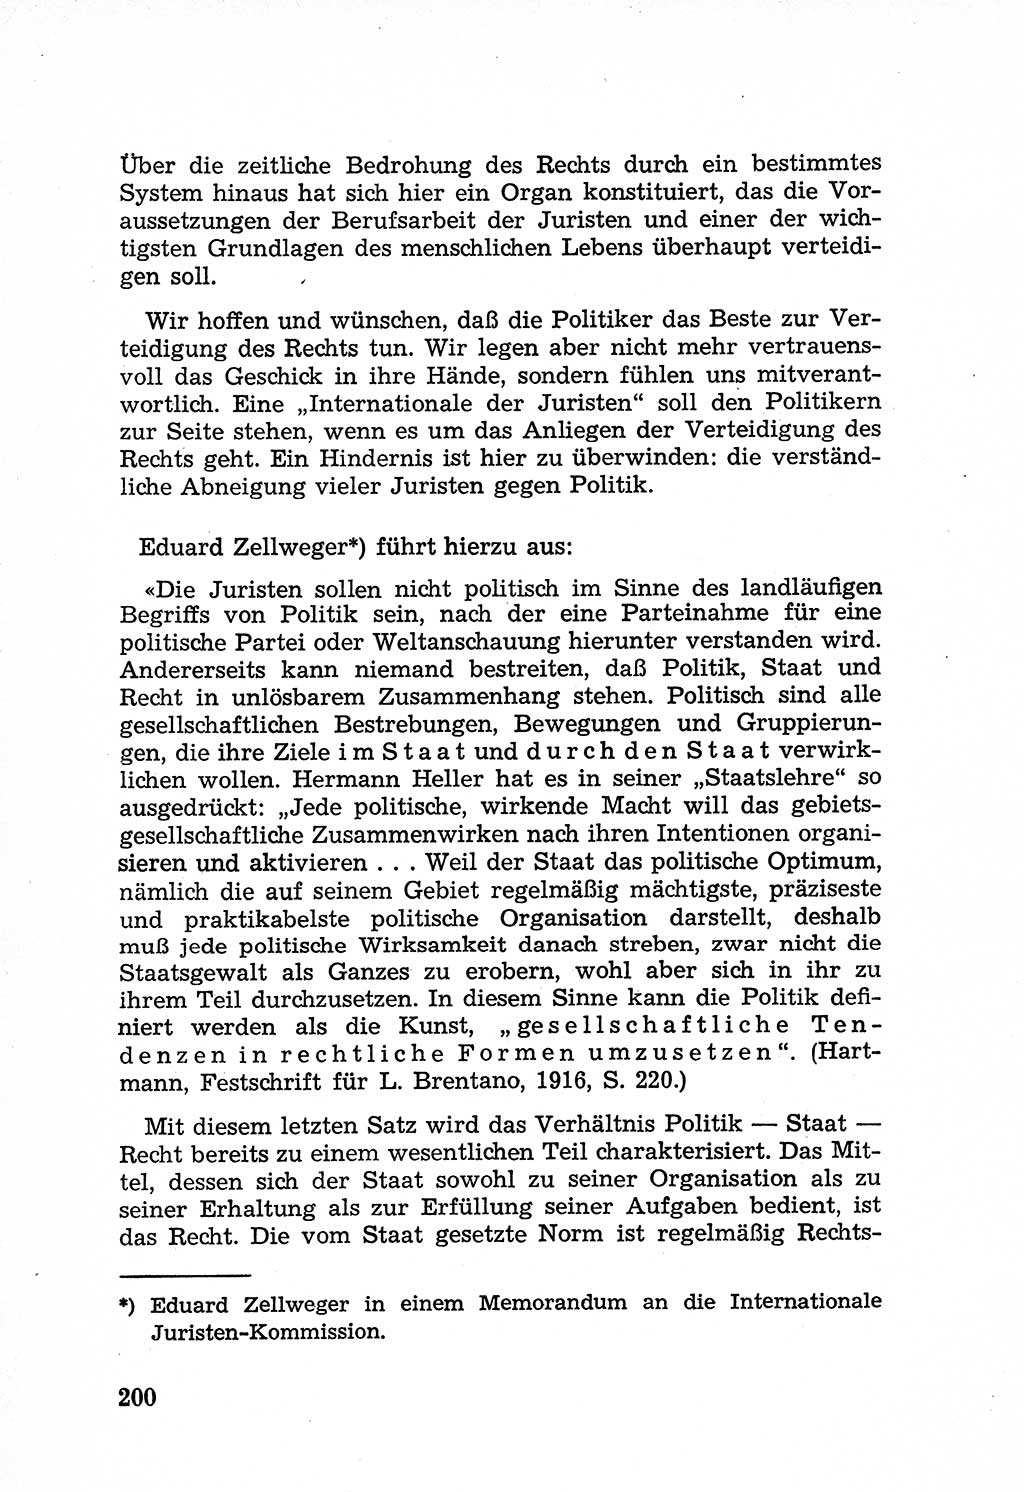 Rechtsstaat in zweierlei Hinsicht, Untersuchungsausschuß freiheitlicher Juristen (UfJ) [Bundesrepublik Deutschland (BRD)] 1956, Seite 200 (R.-St. UfJ BRD 1956, S. 200)